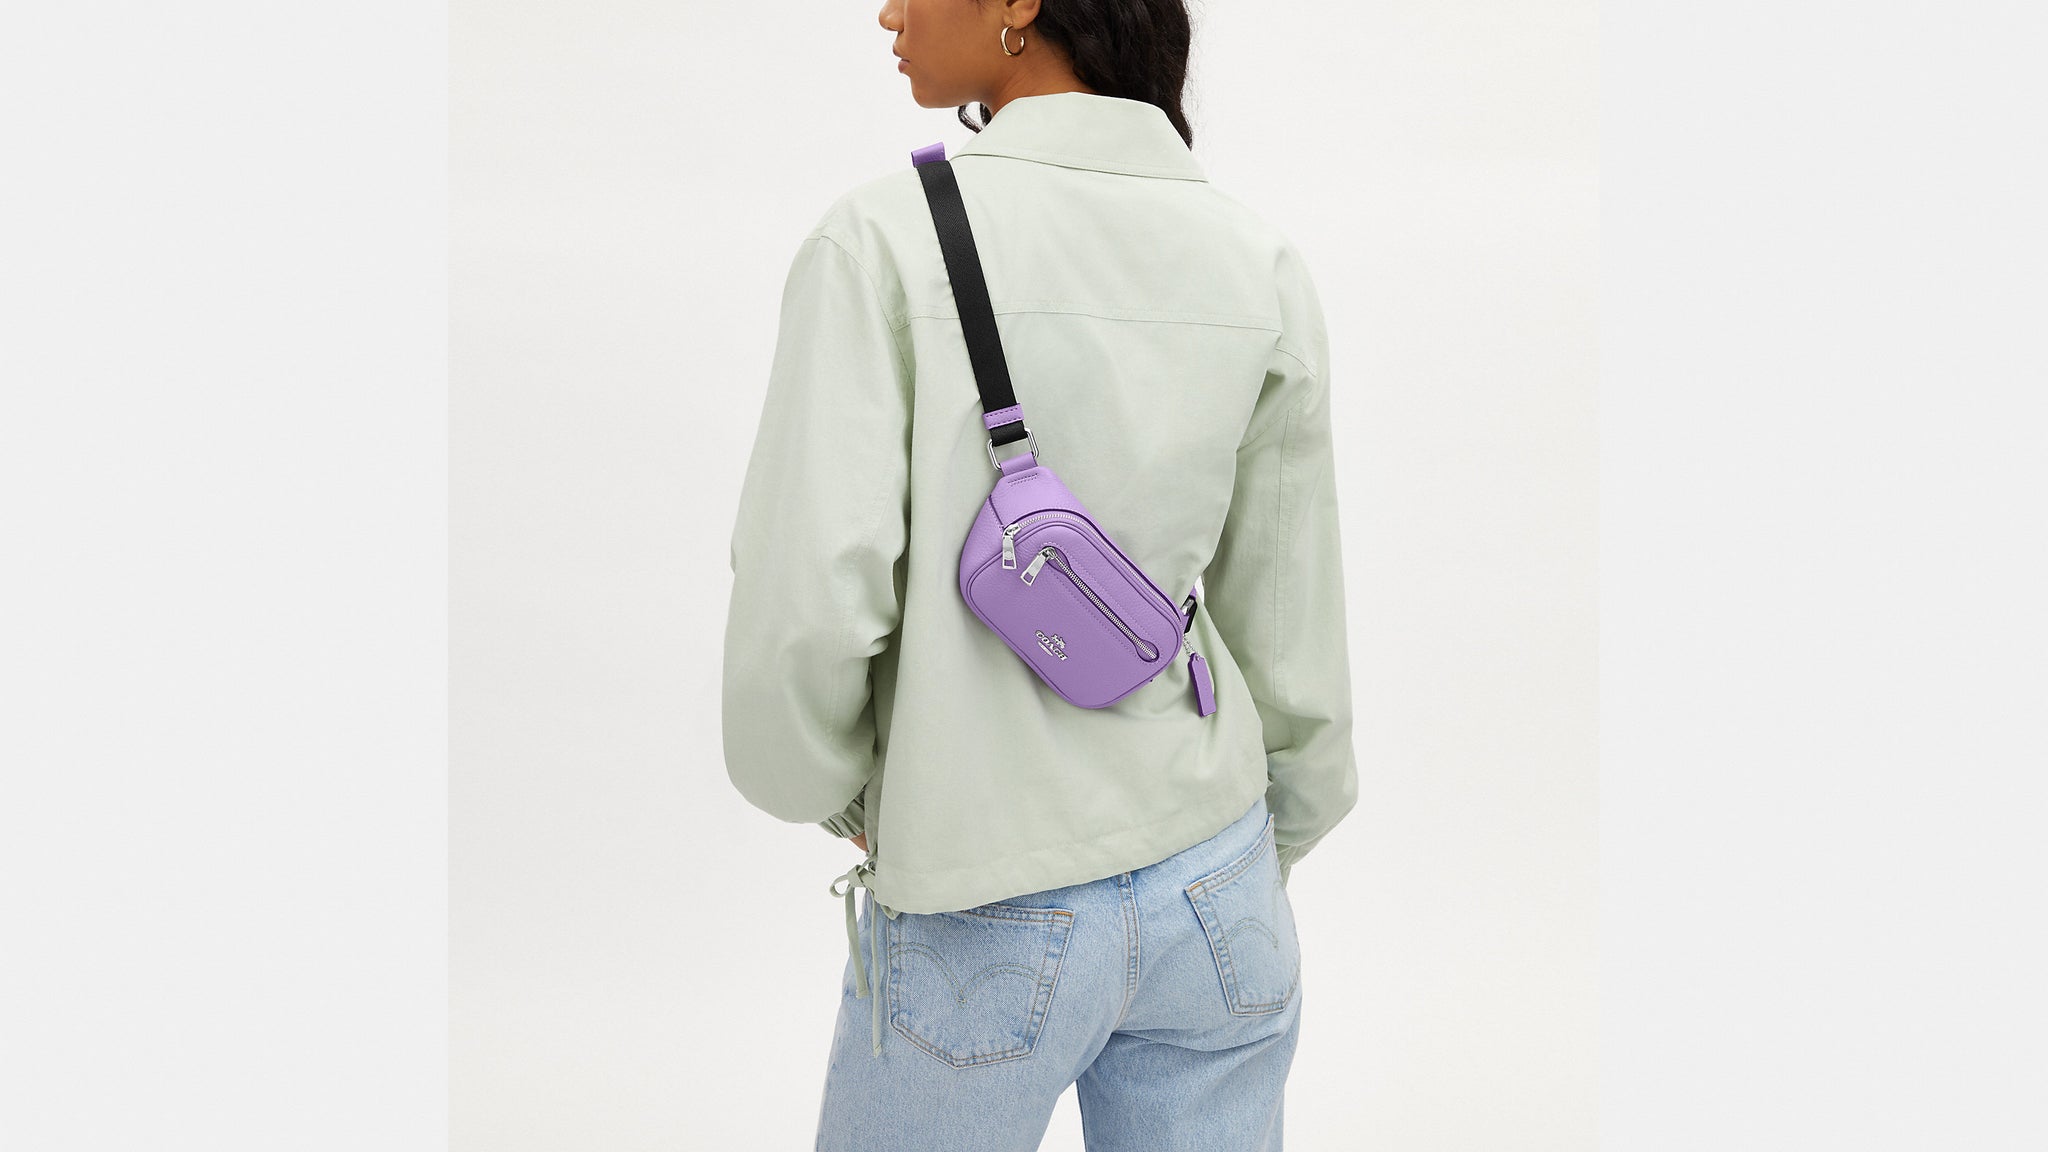 Louis Vuitton Bumbag & Coach Belt Bag Bag Review 